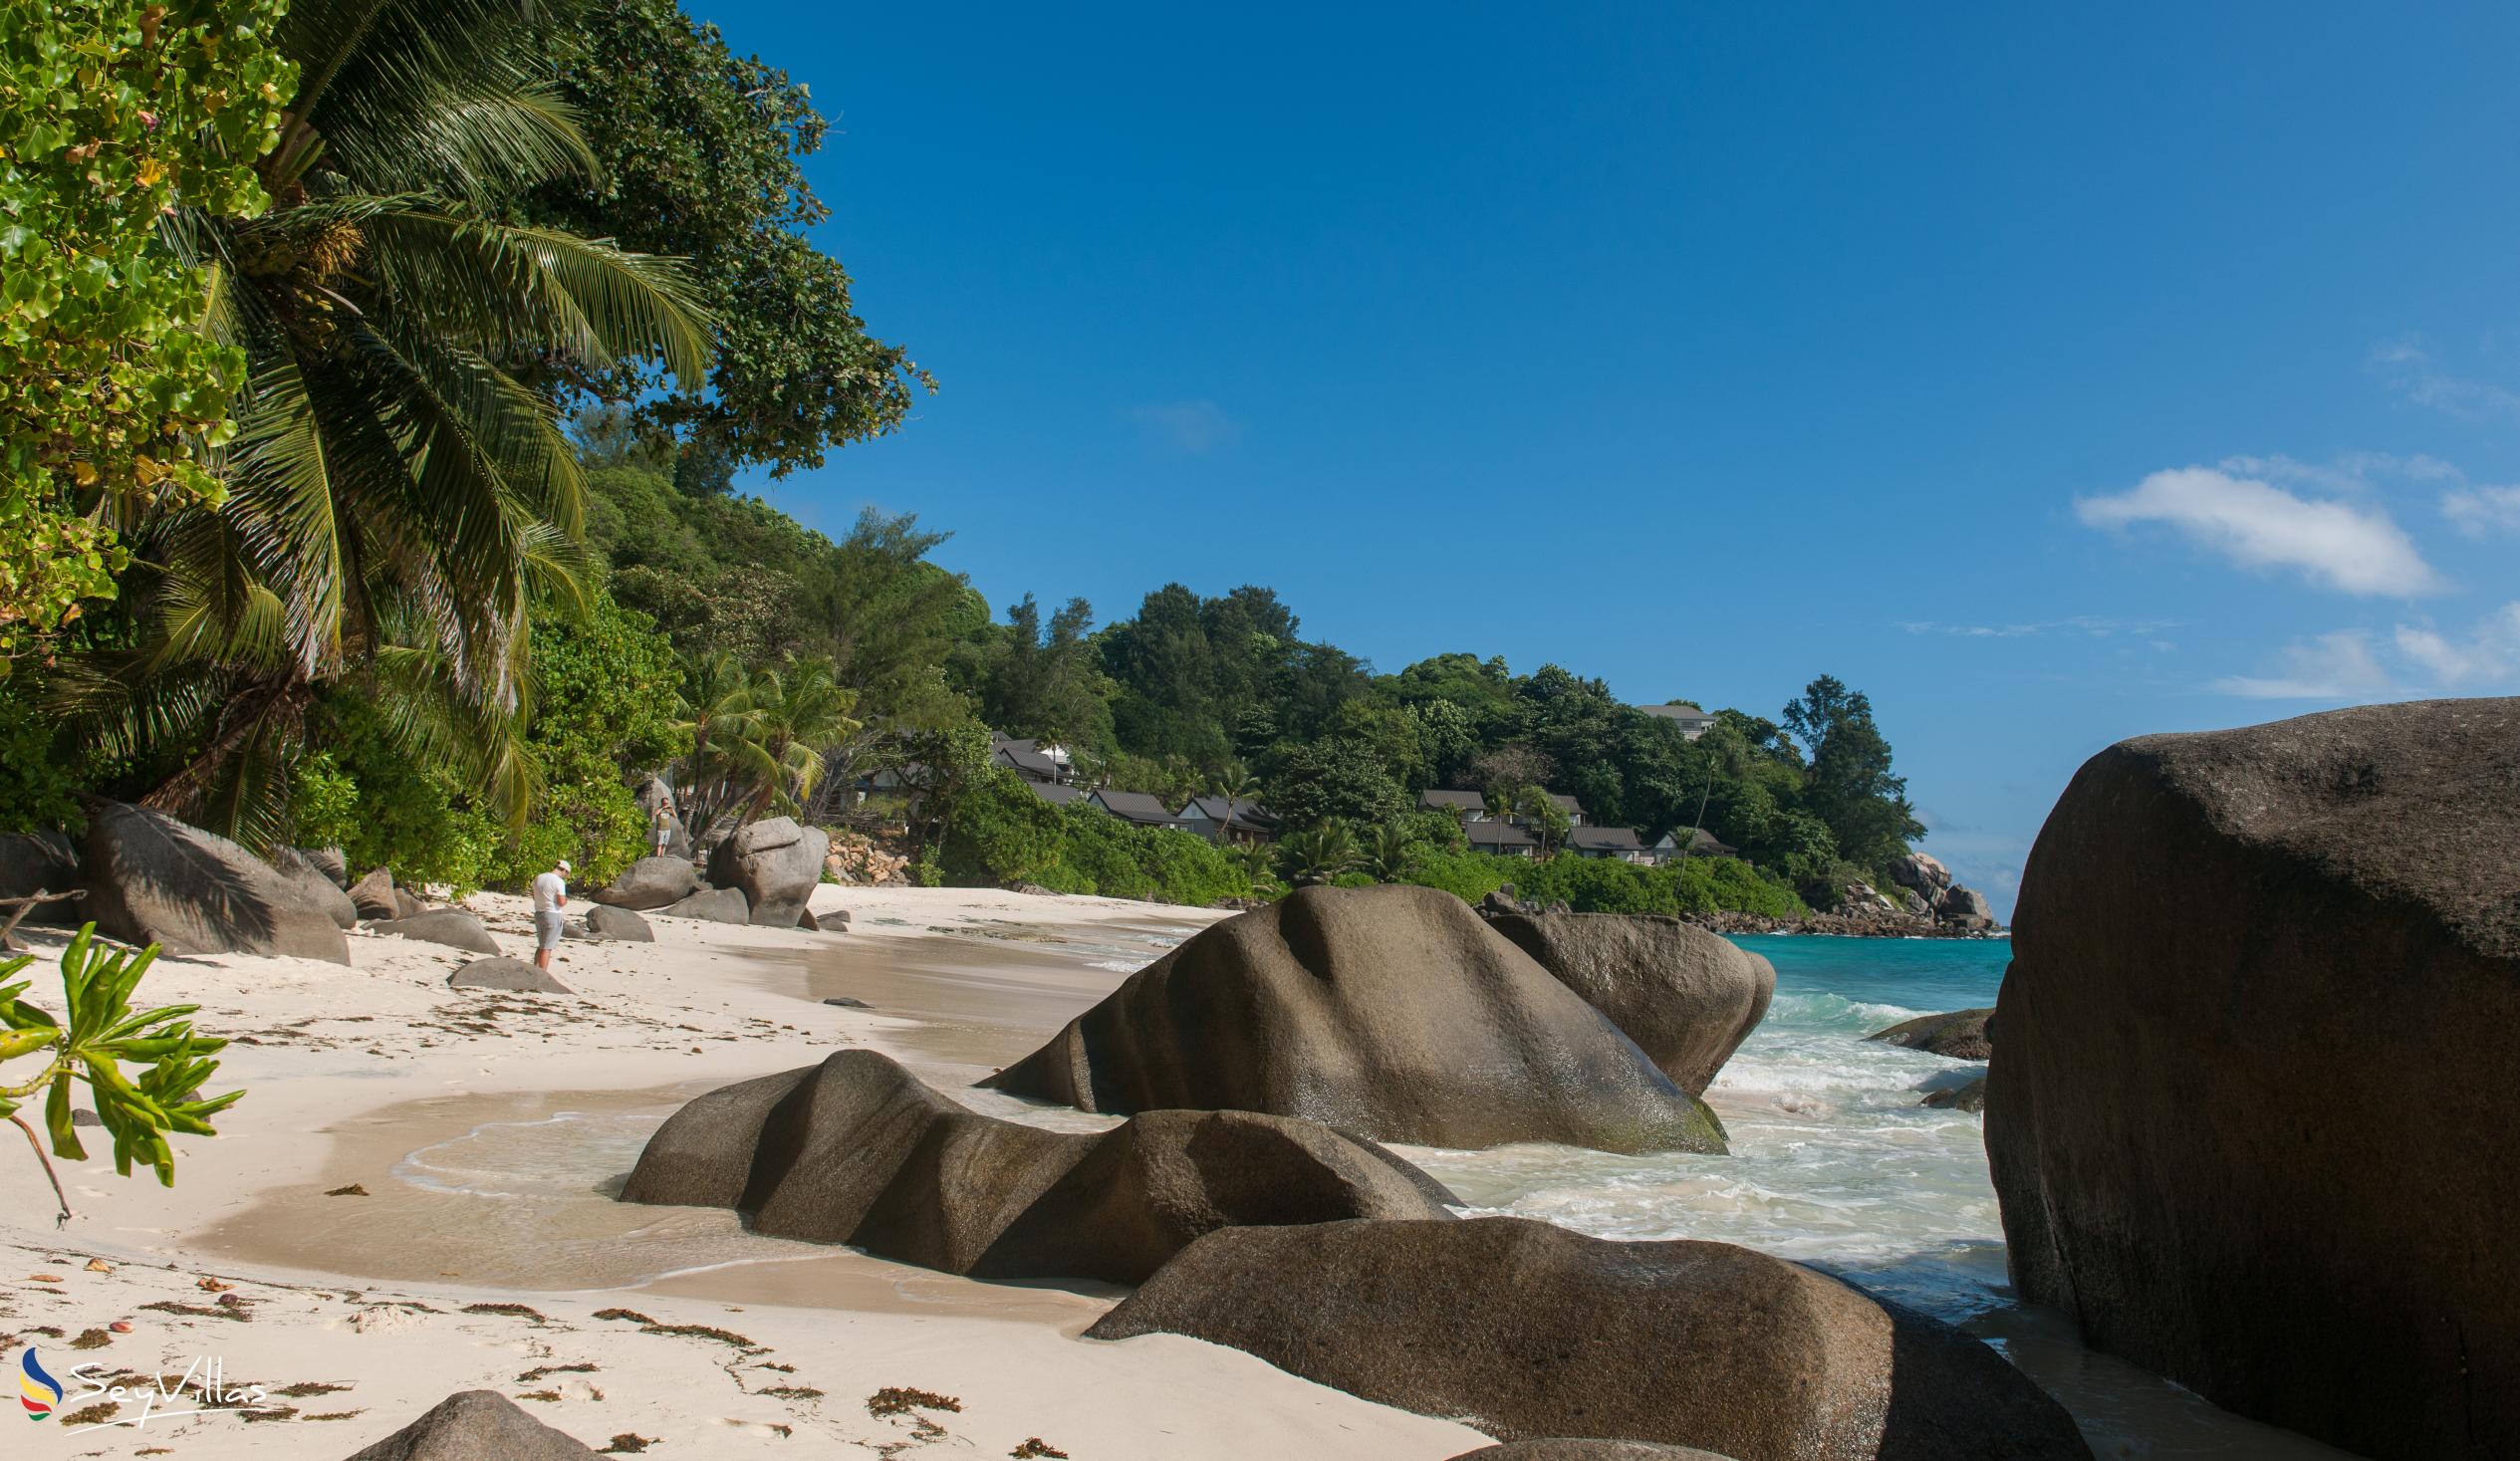 Foto 21: Carana Beach Hotel - Location - Mahé (Seychelles)